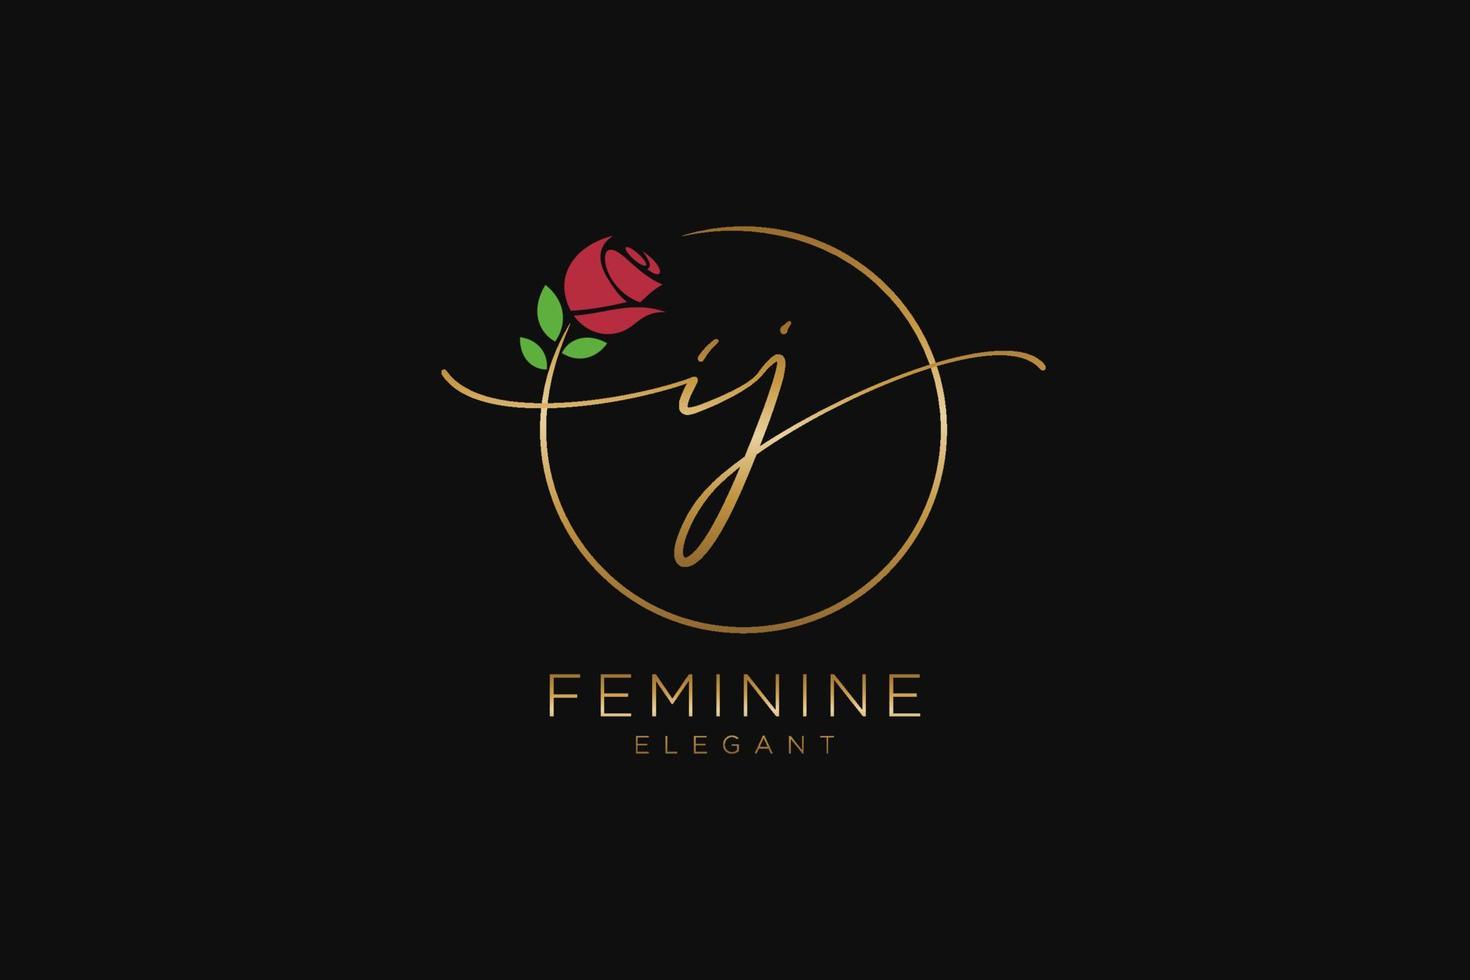 monogramme de beauté du logo féminin initial ij et design élégant du logo, logo manuscrit de la signature initiale, mariage, mode, floral et botanique avec modèle créatif. vecteur